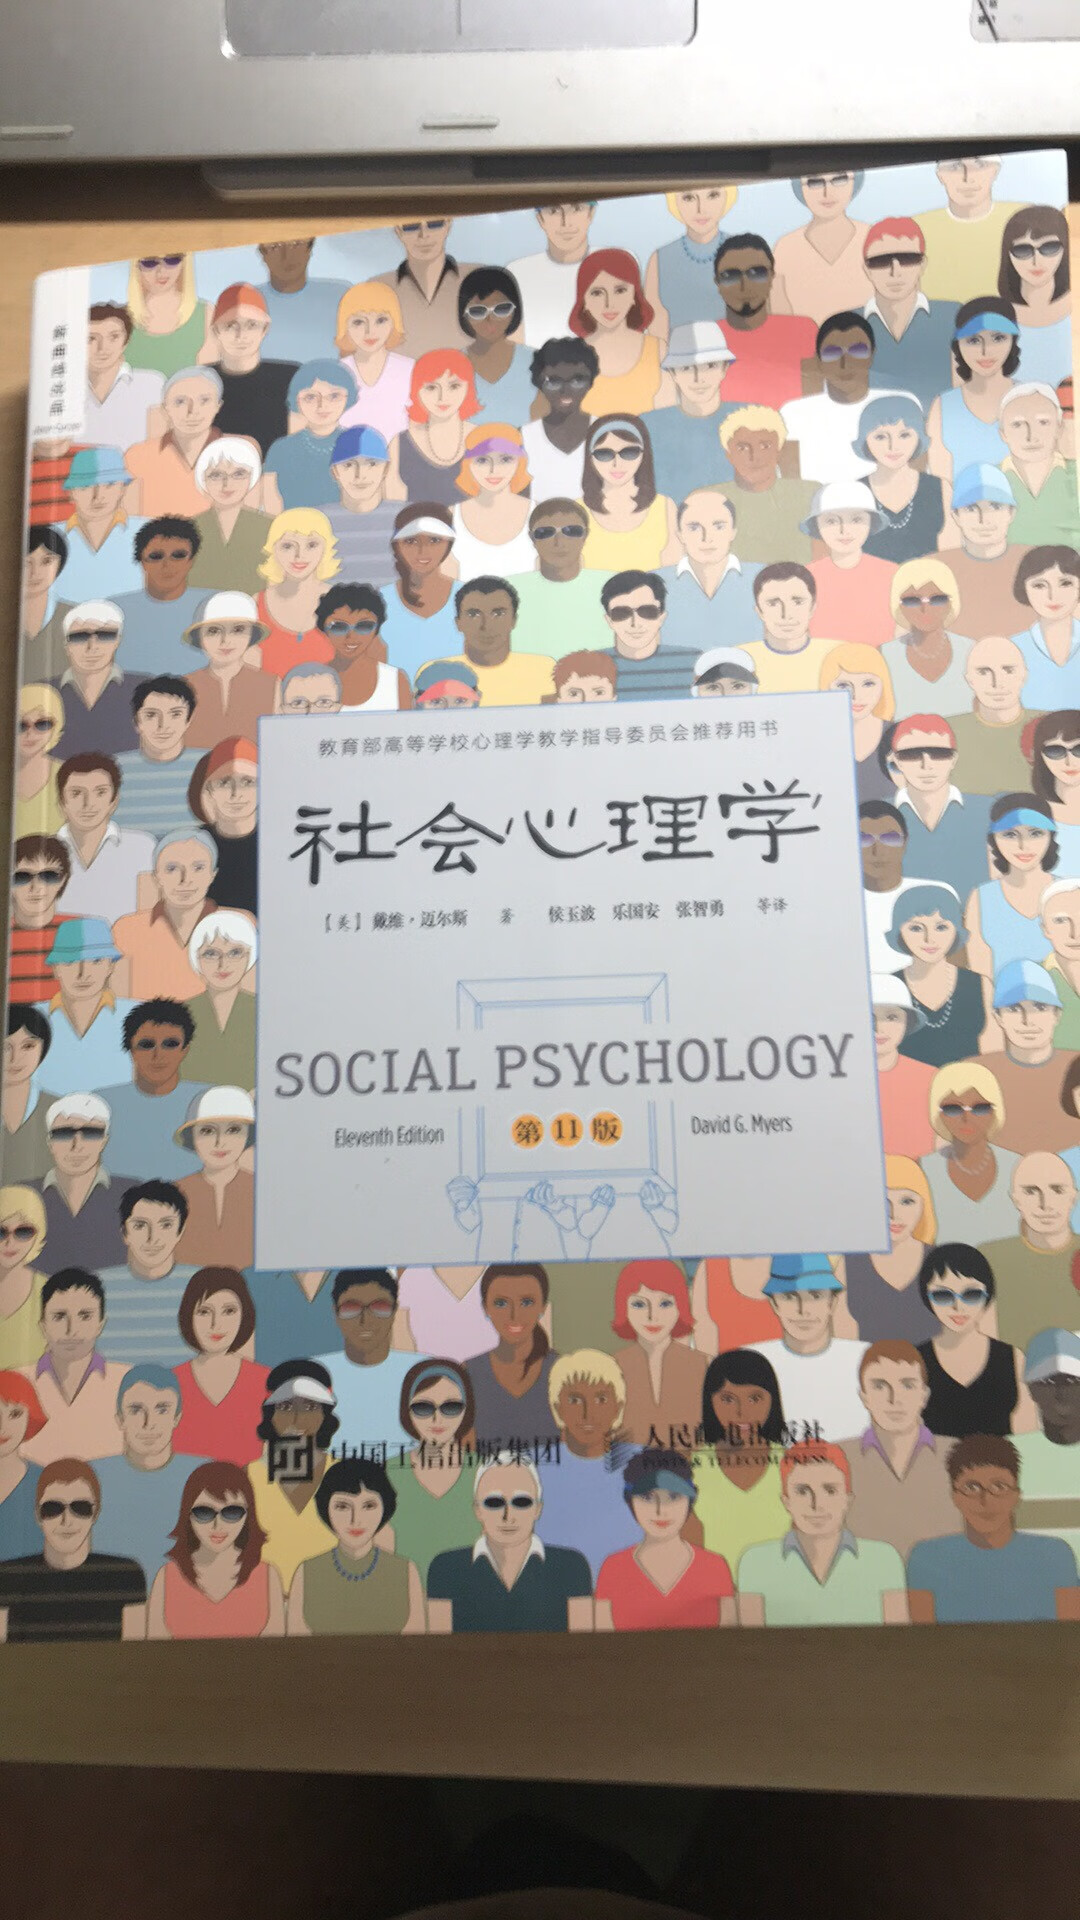 社会心理学，值得学习一下